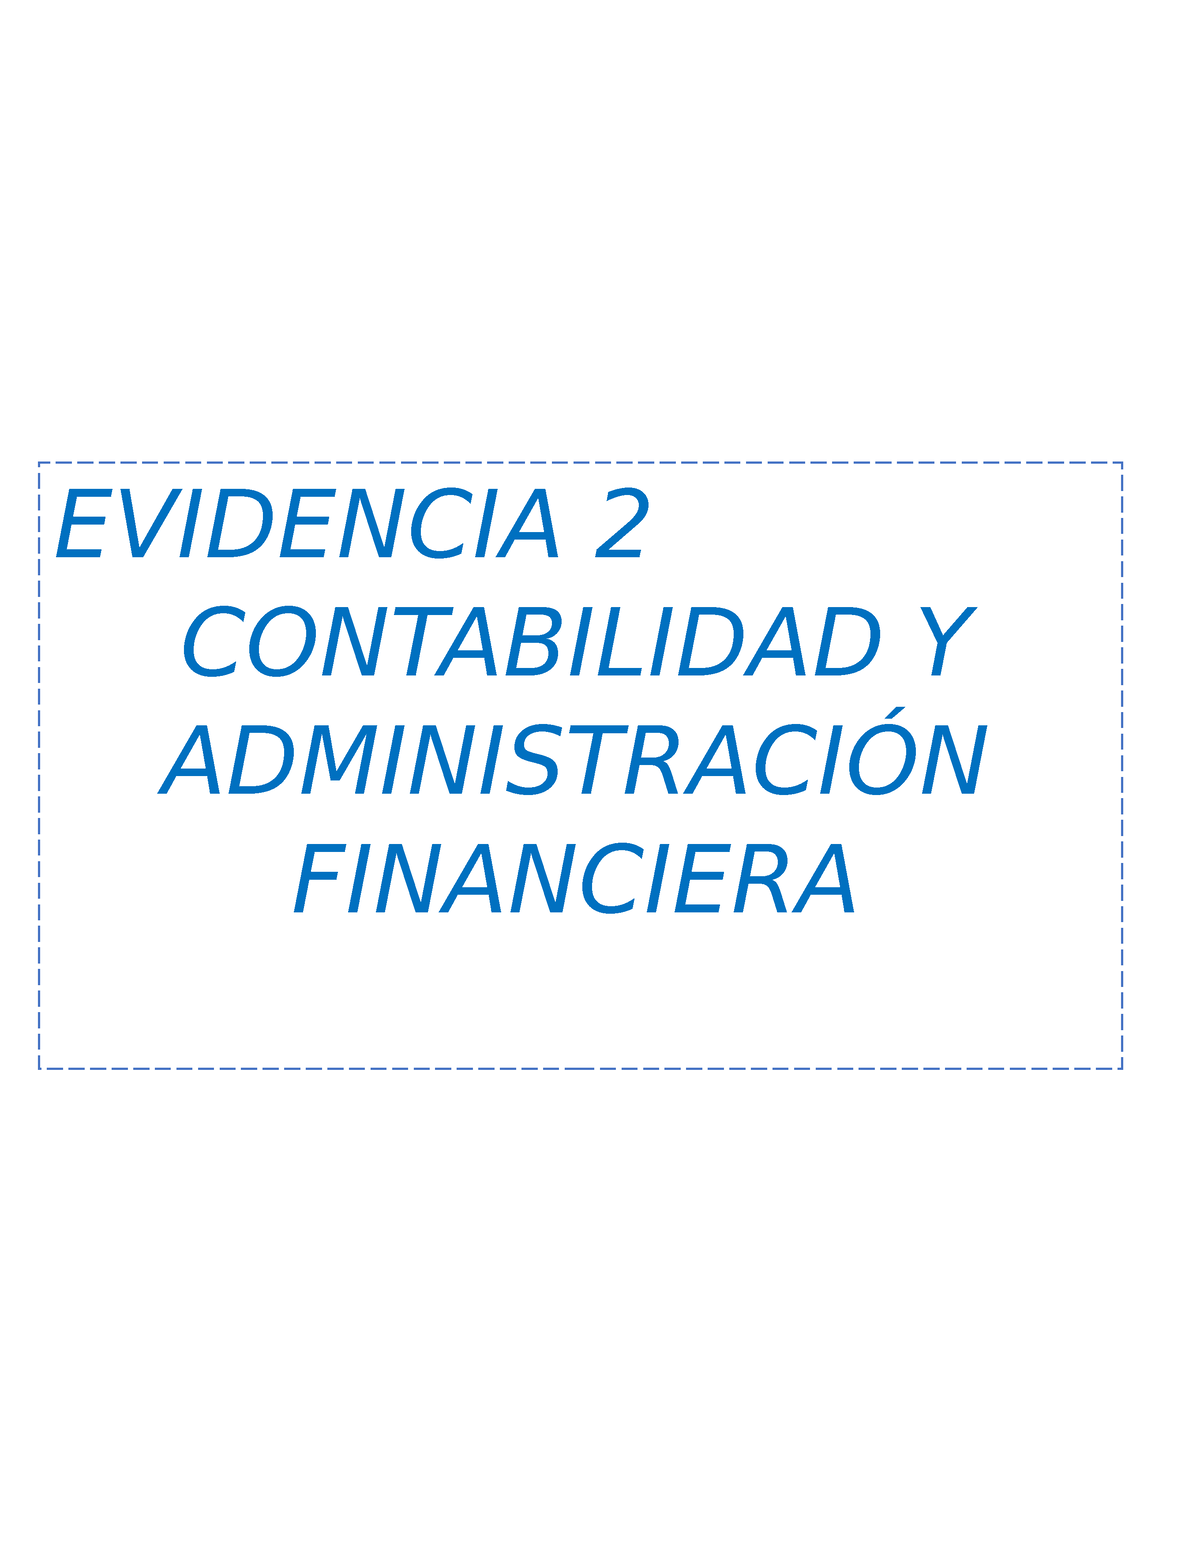 Evidencia 2 Contabilidad Financiera Evidencia 2 Contabilidad Y AdministraciÓn Financiera 6263